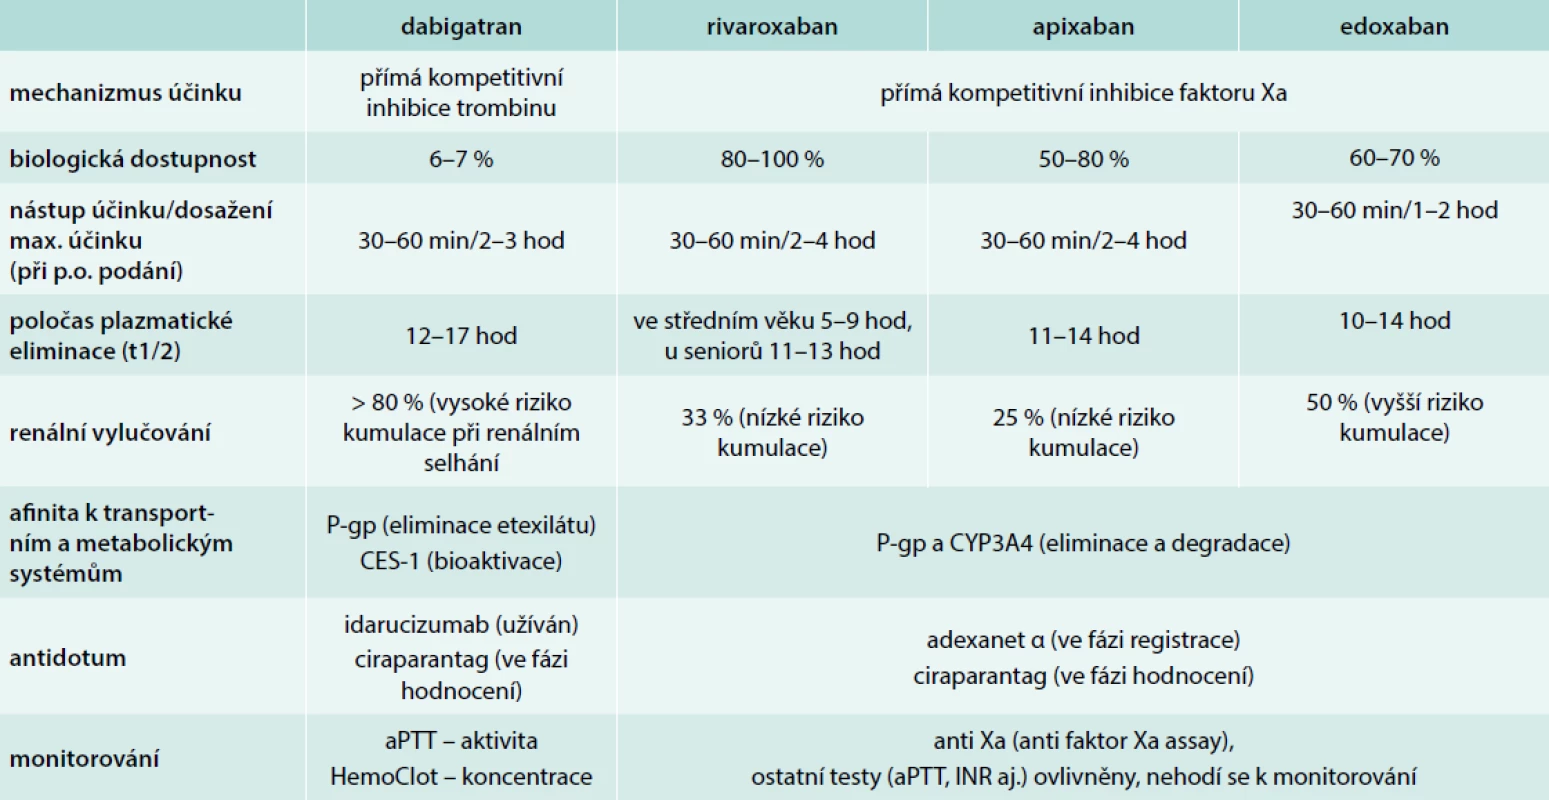 Srovnání základních farmakologických ukazatelů přímých inhibitorů trombinu a faktoru Xa